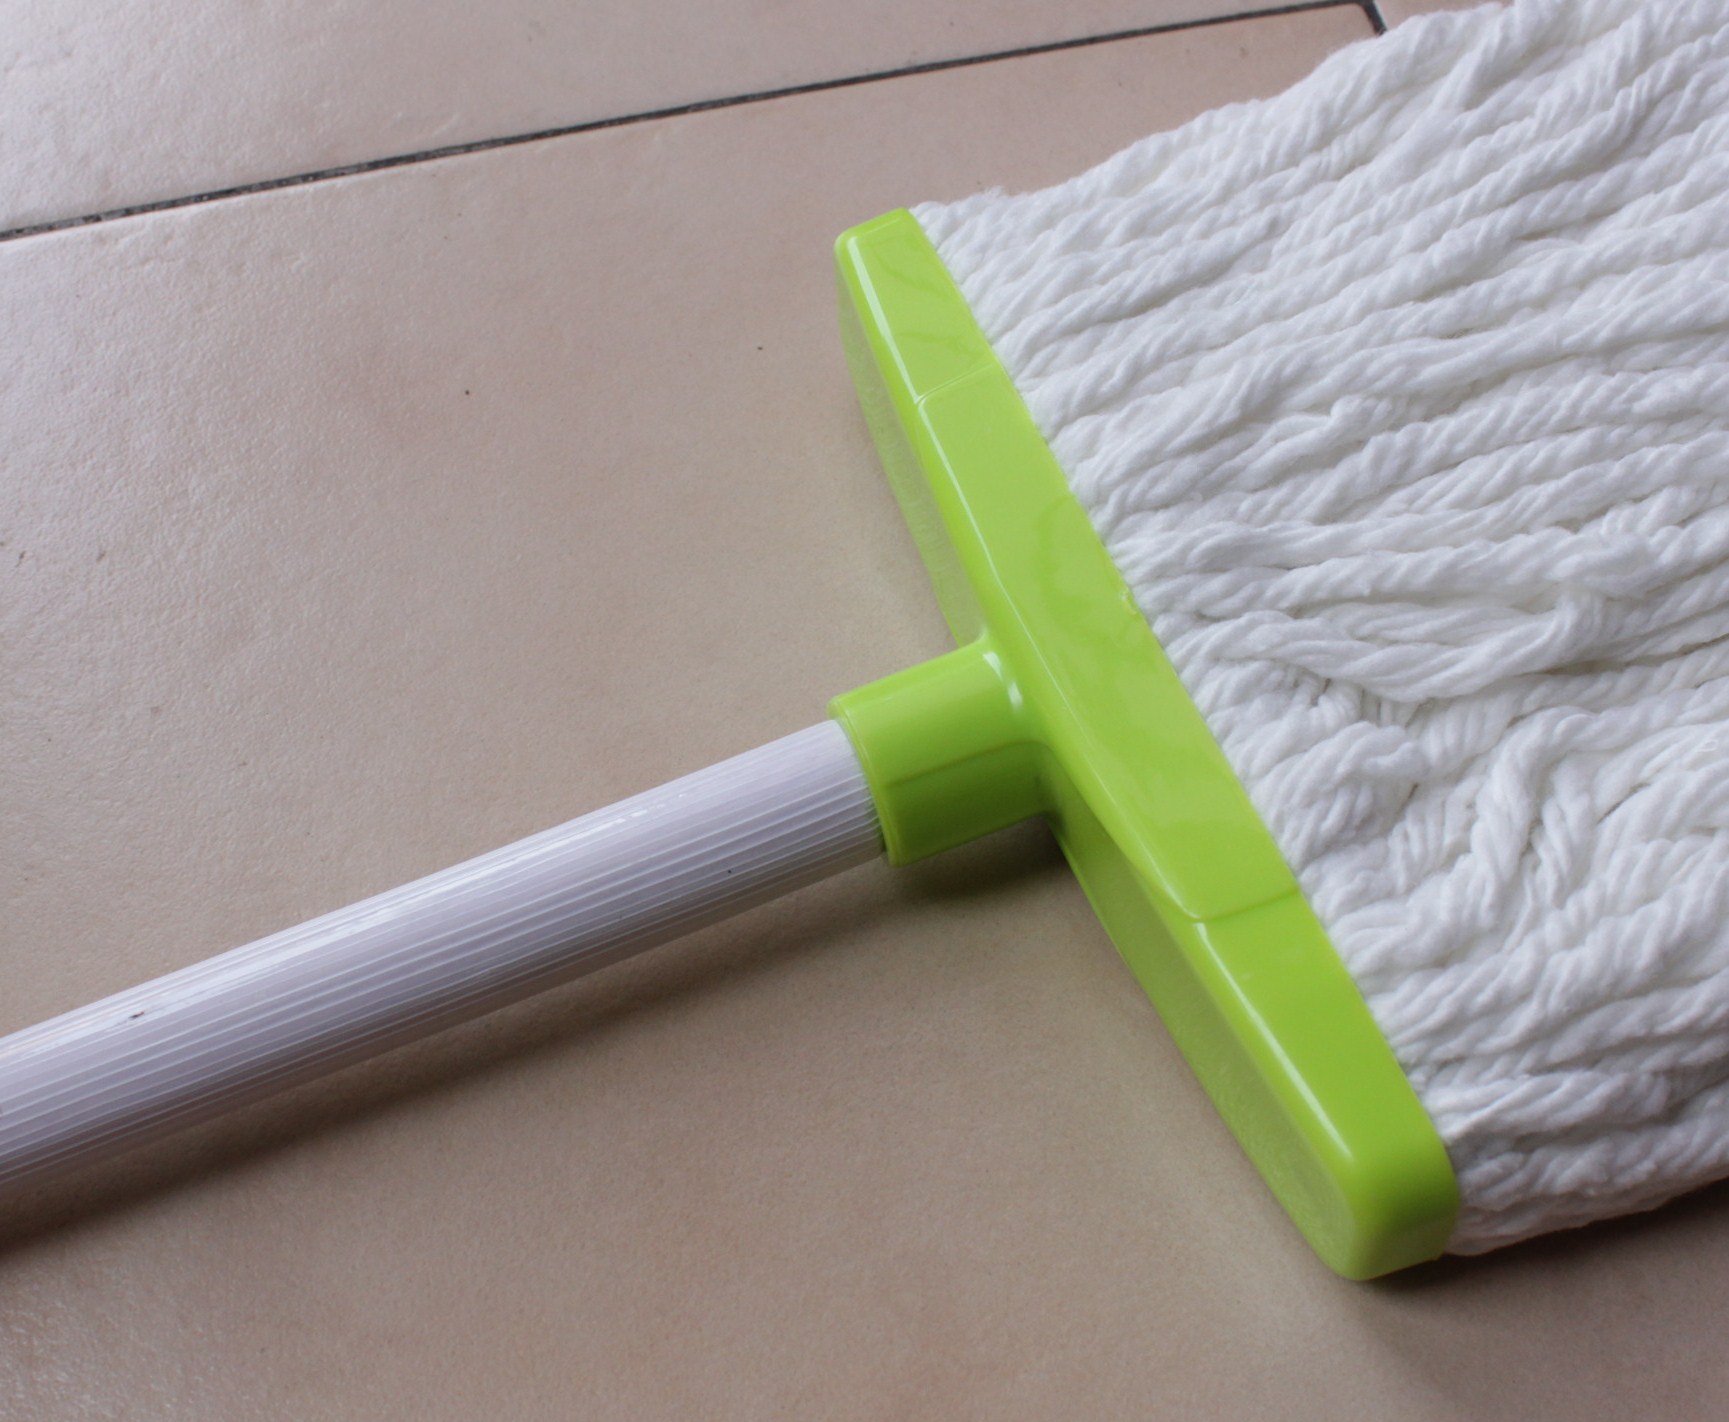  Gambar  Alat alat Kebersihan rumah  tangga